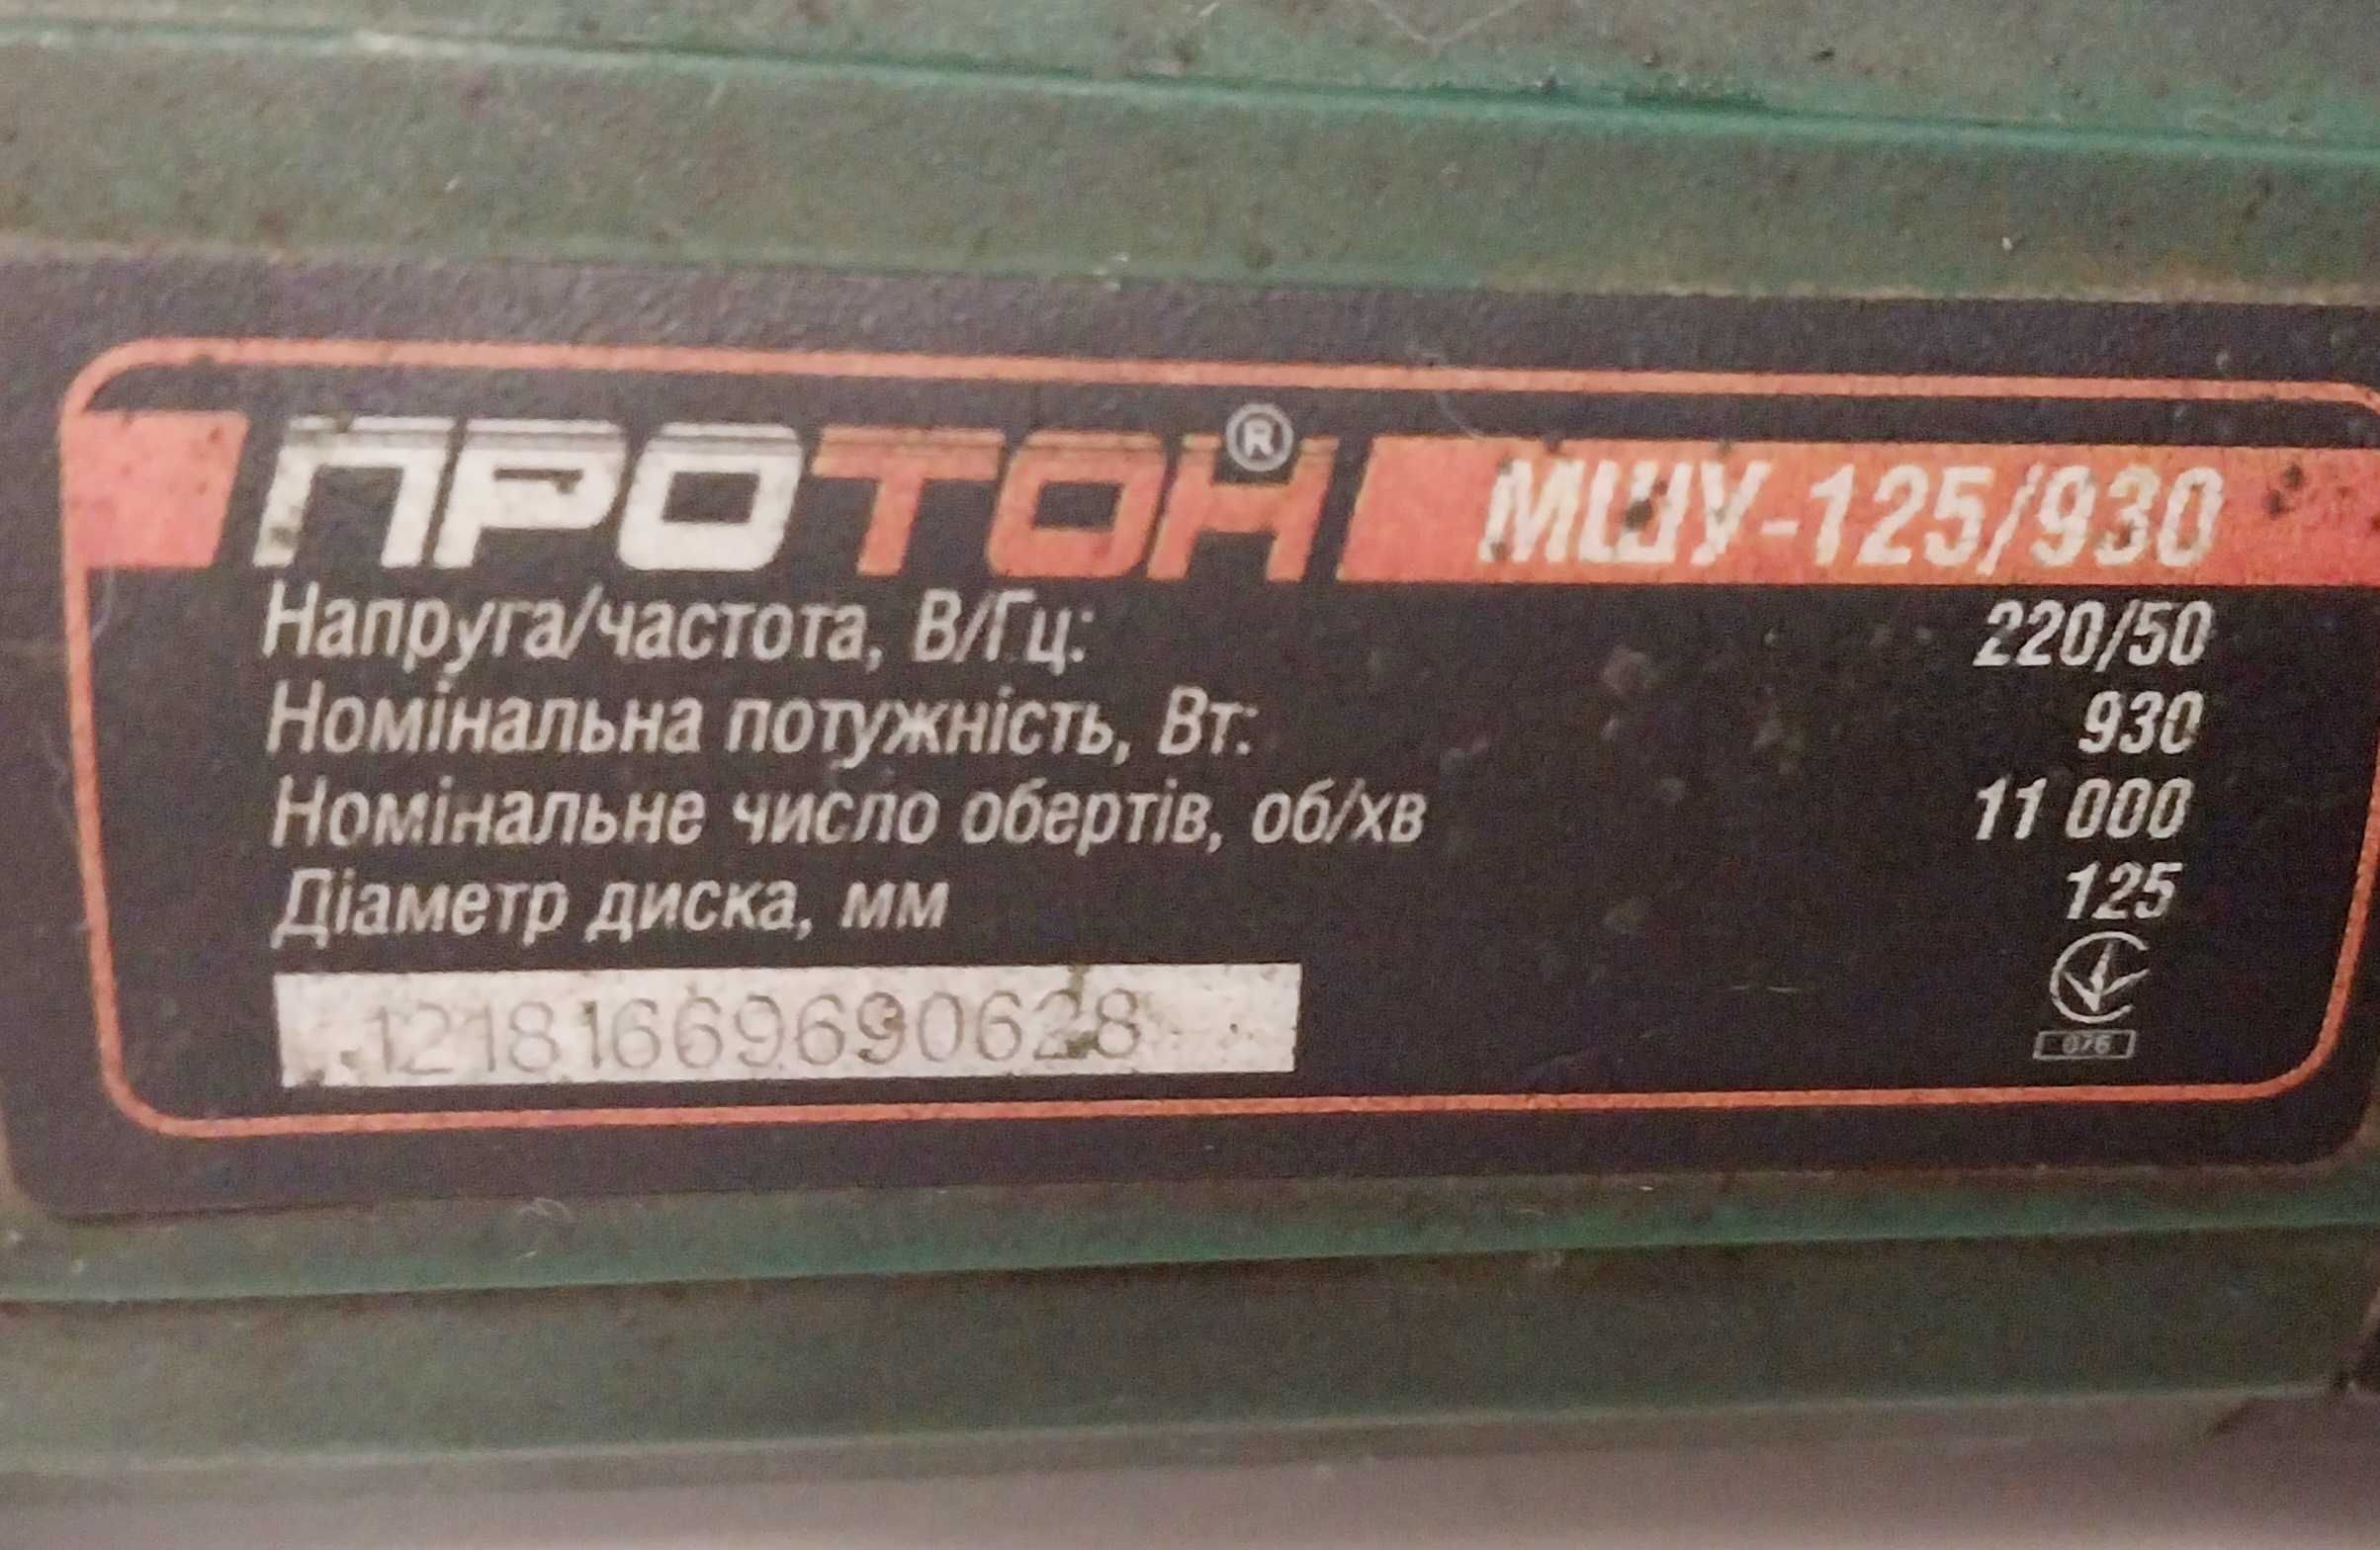 Продам болгарку Протон МШУ-125/930, б/в, в робочому стані